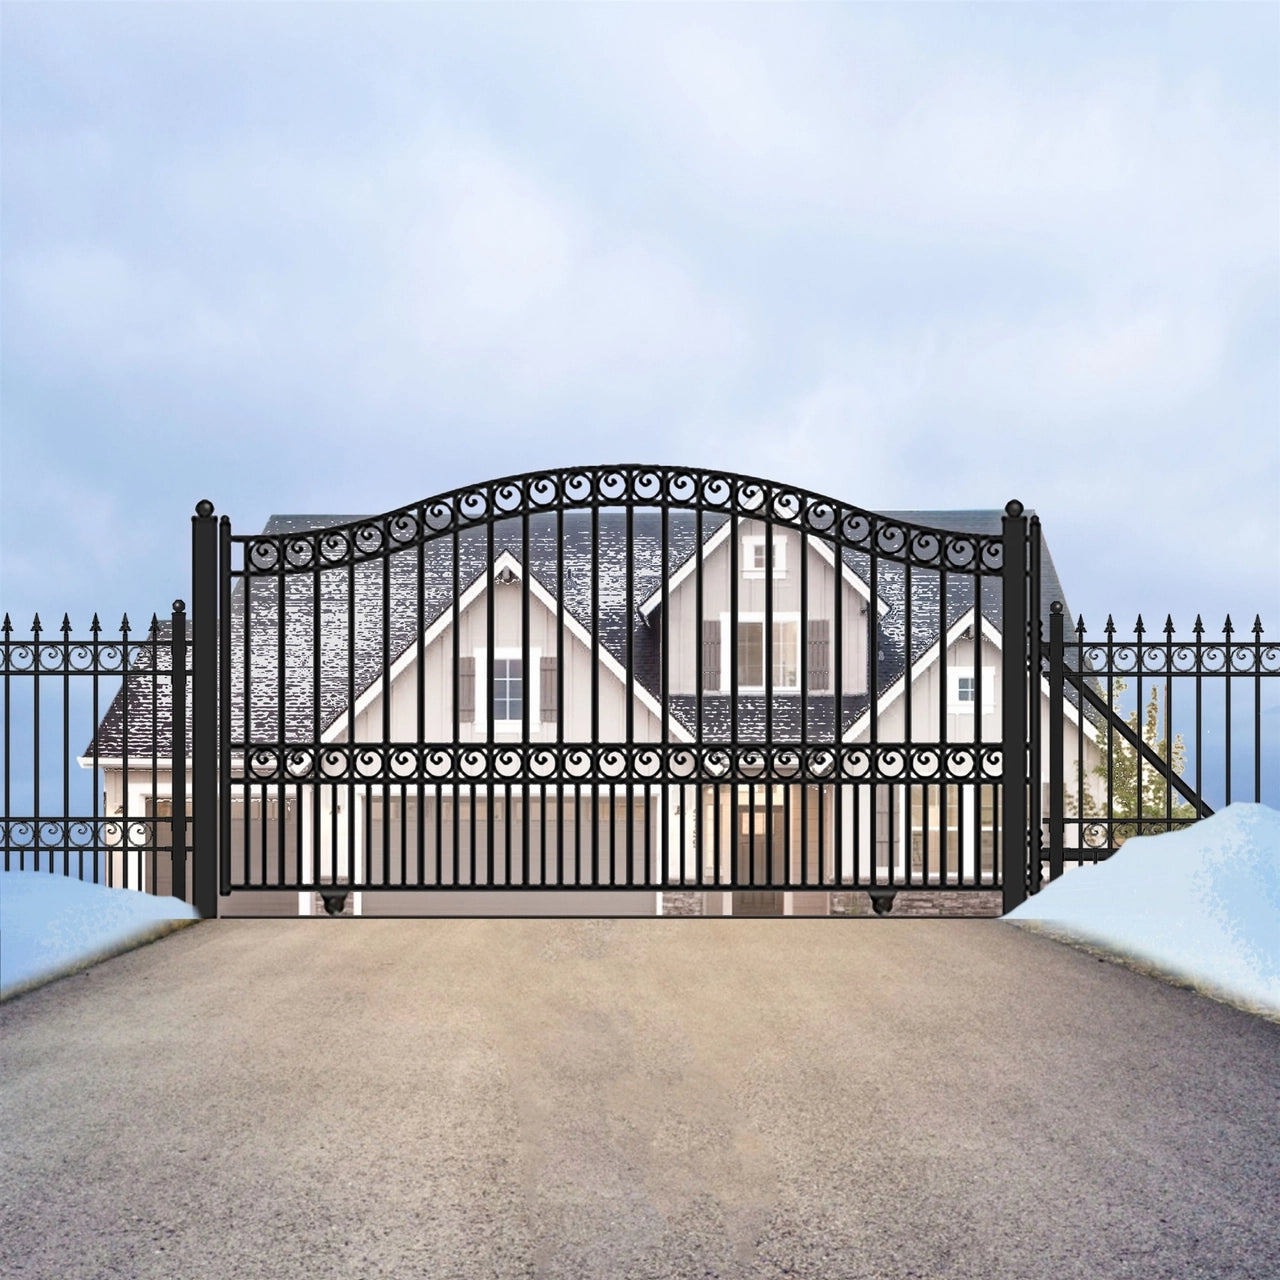 Aleko Steel Sliding Driveway Gate - PARIS Style - 12 x 6